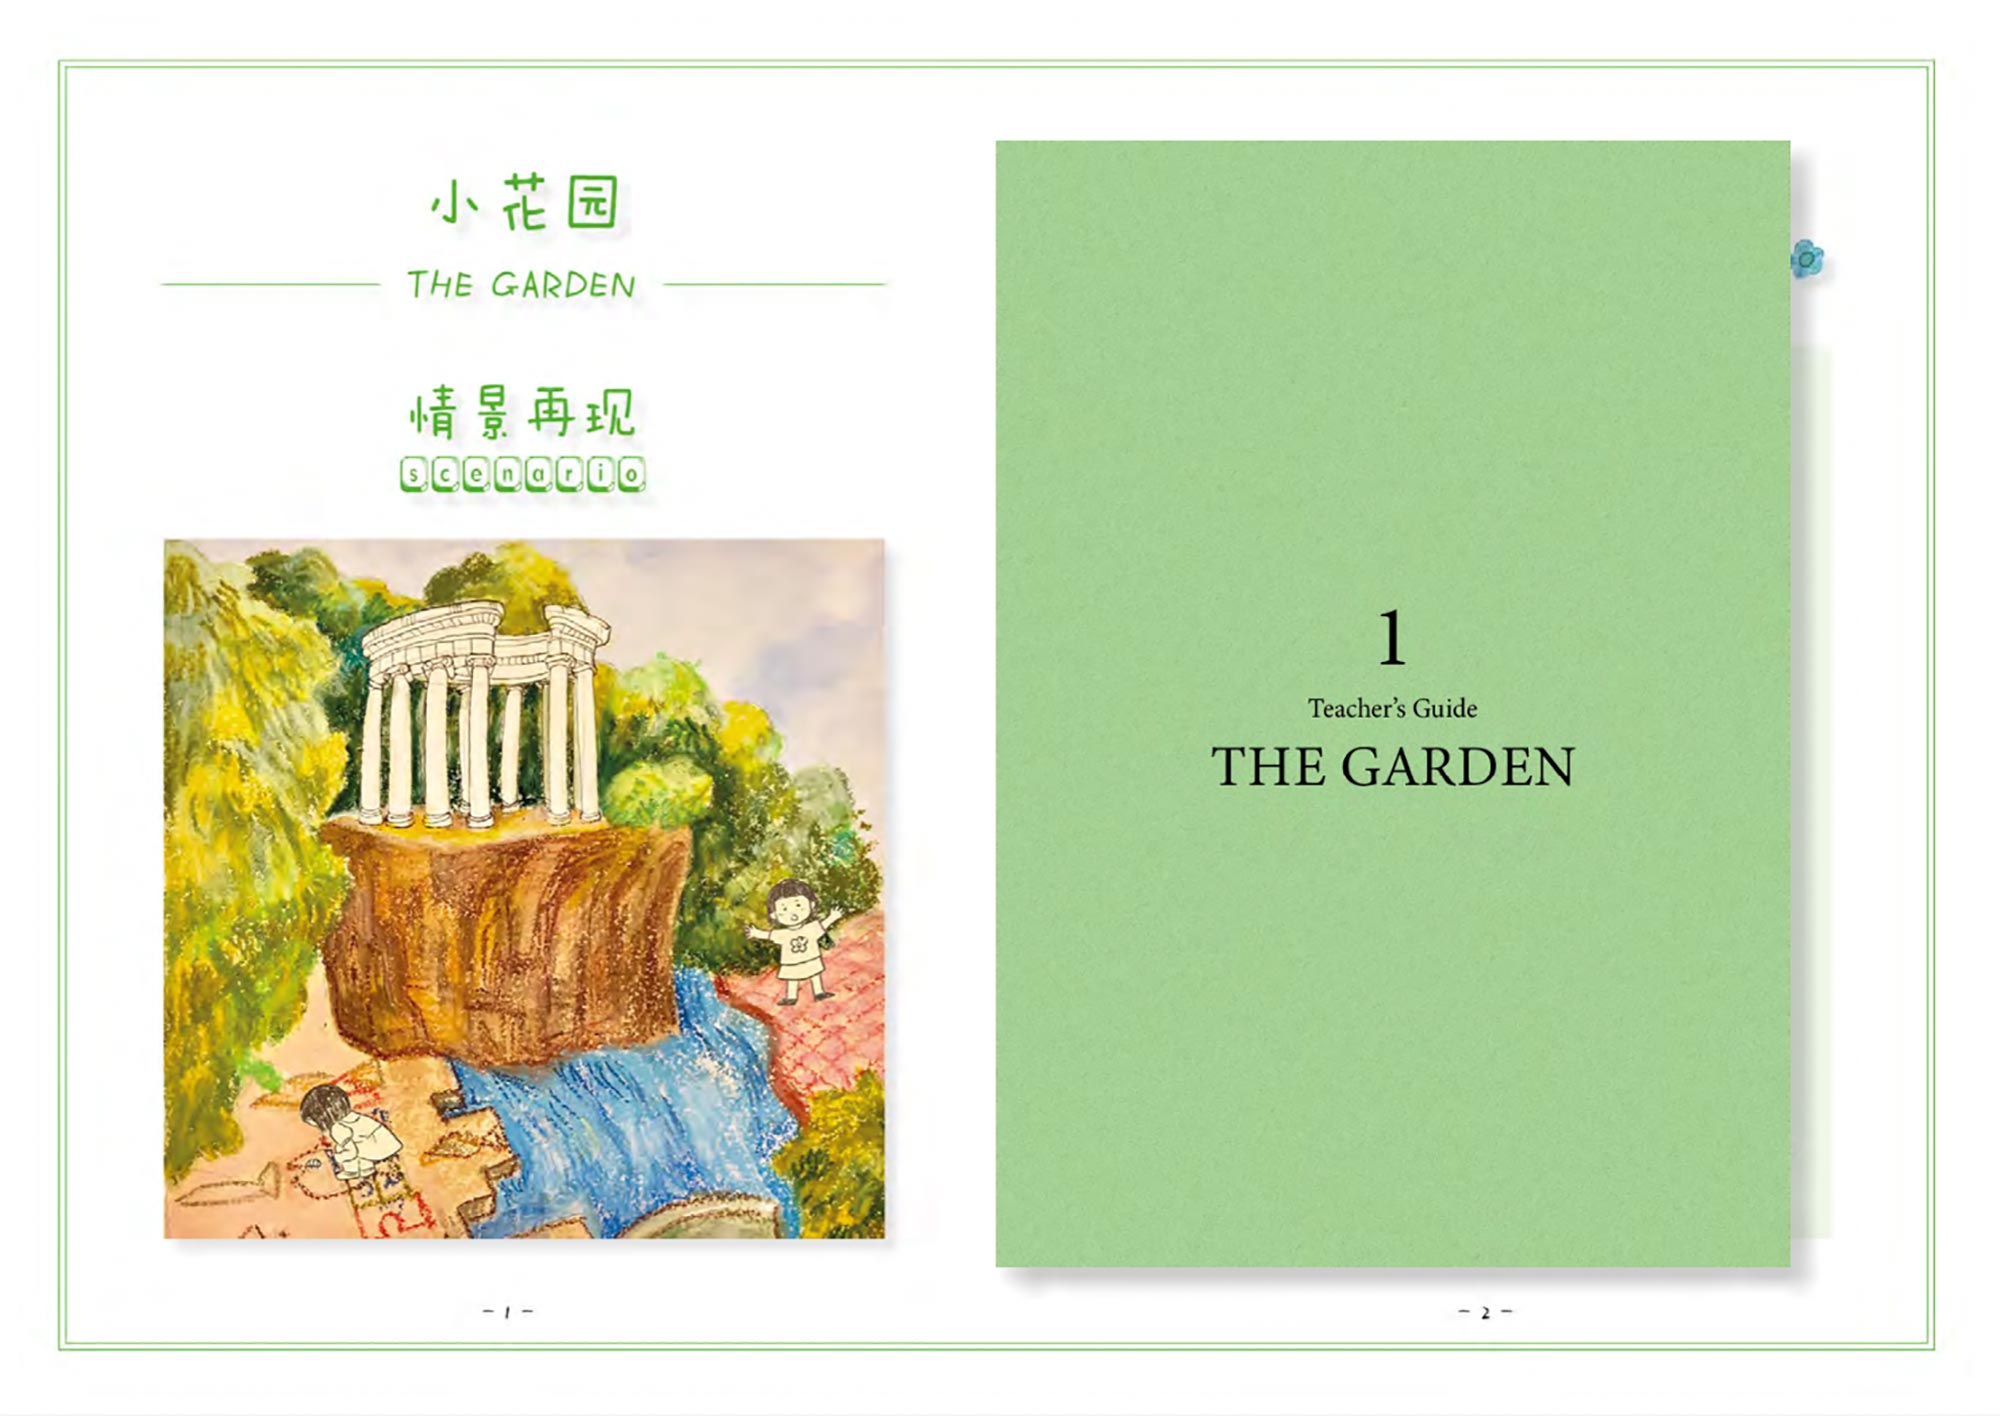 1. The Garden